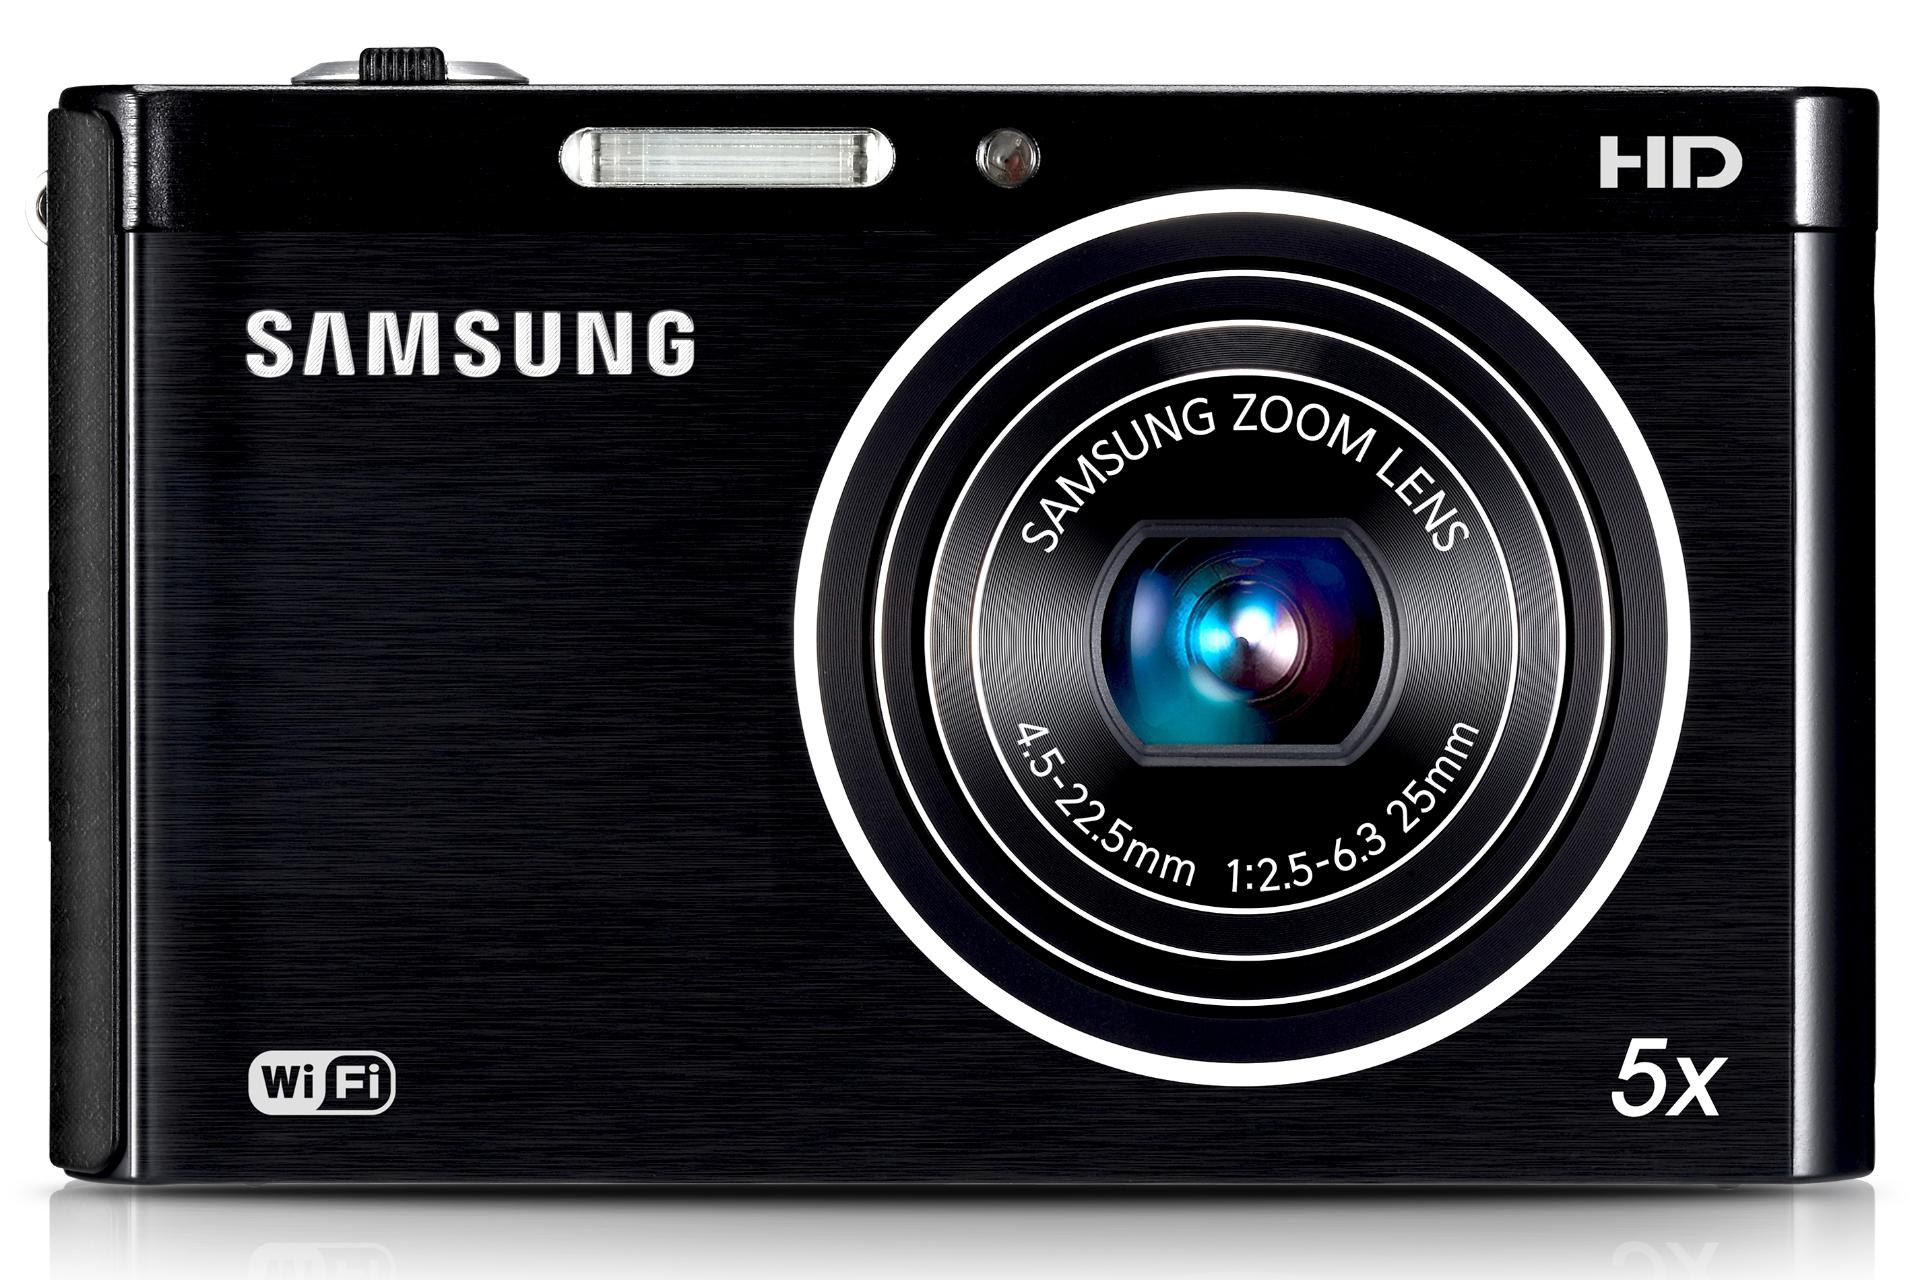 نمای روبرو دوربین عکاسی سامسونگ Samsung DV300F